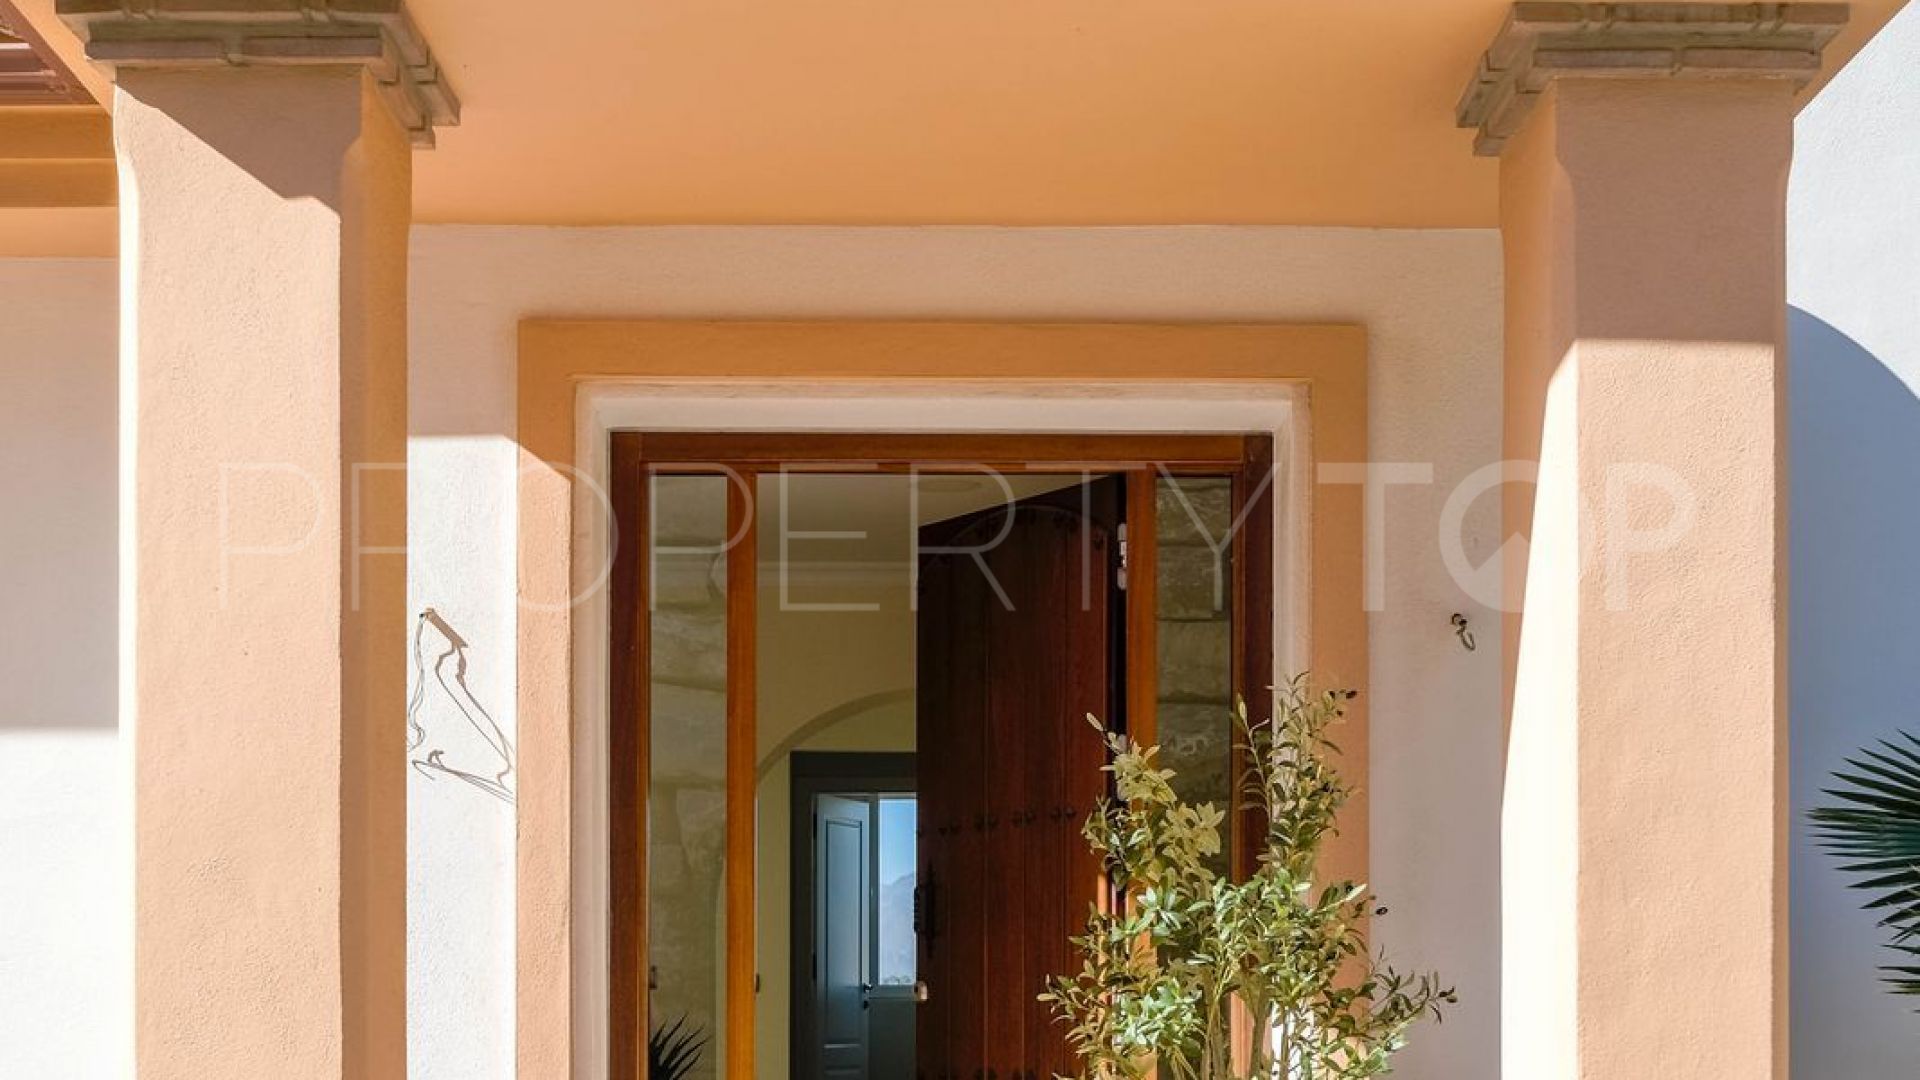 For sale villa with 4 bedrooms in Sierrezuela